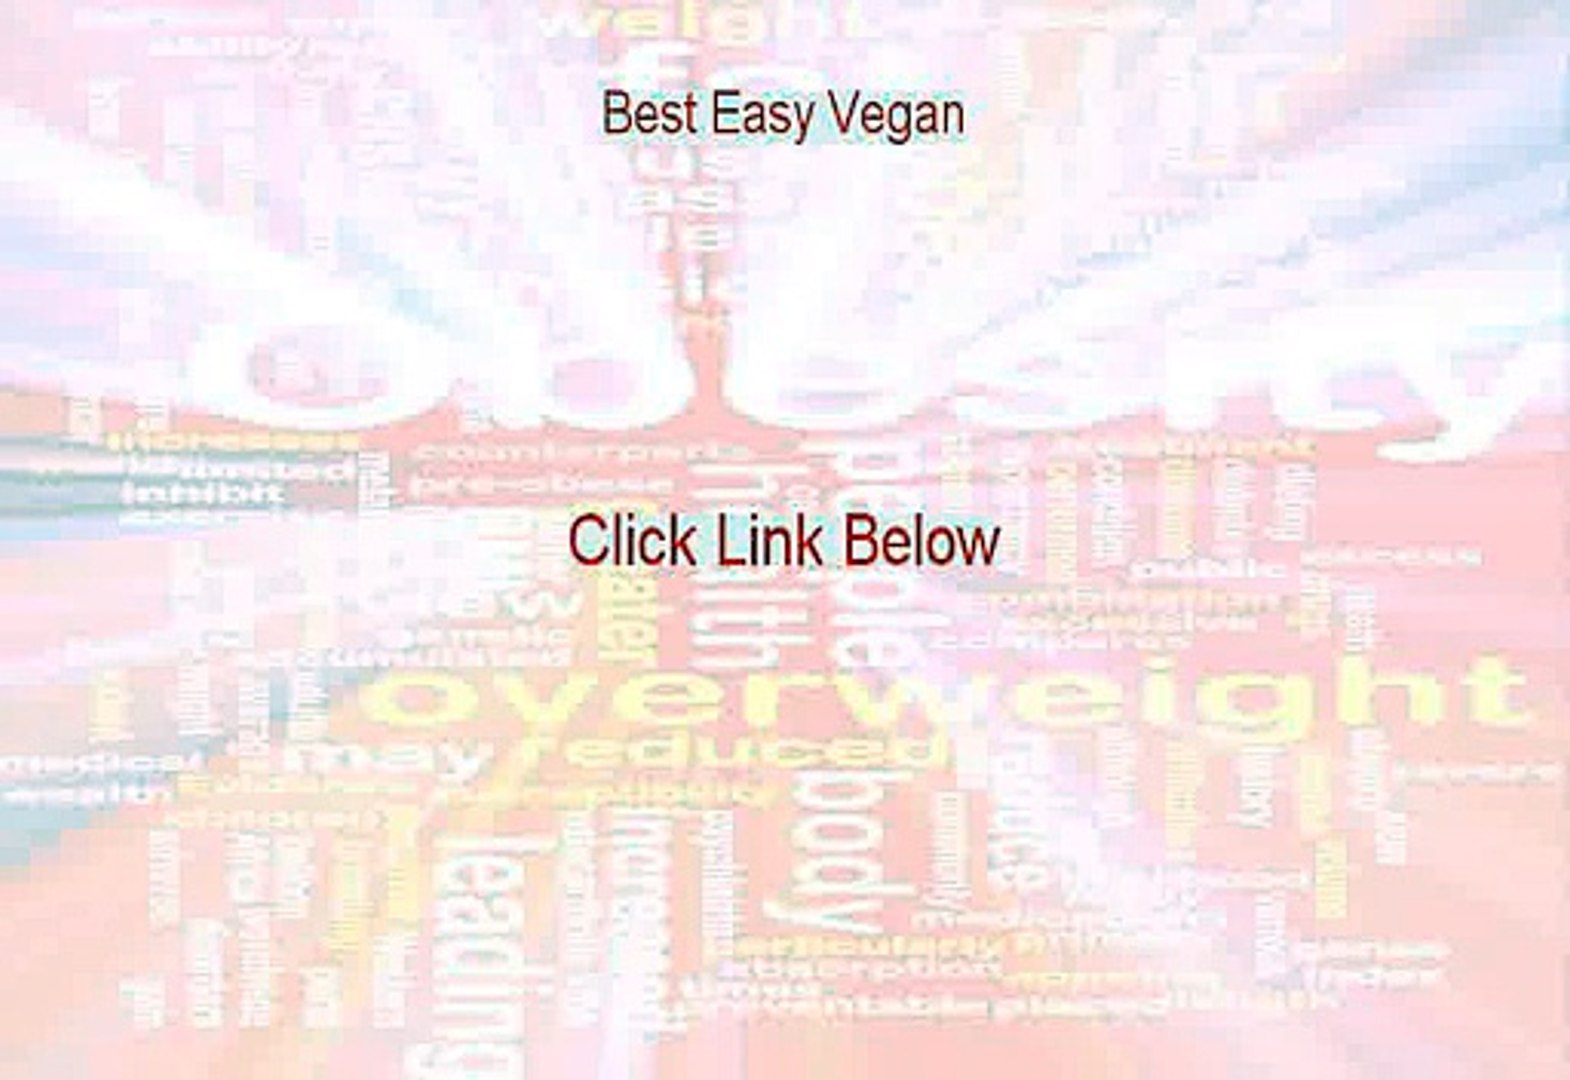 Best Easy Vegan PDF (best easy vegan cookbooks)